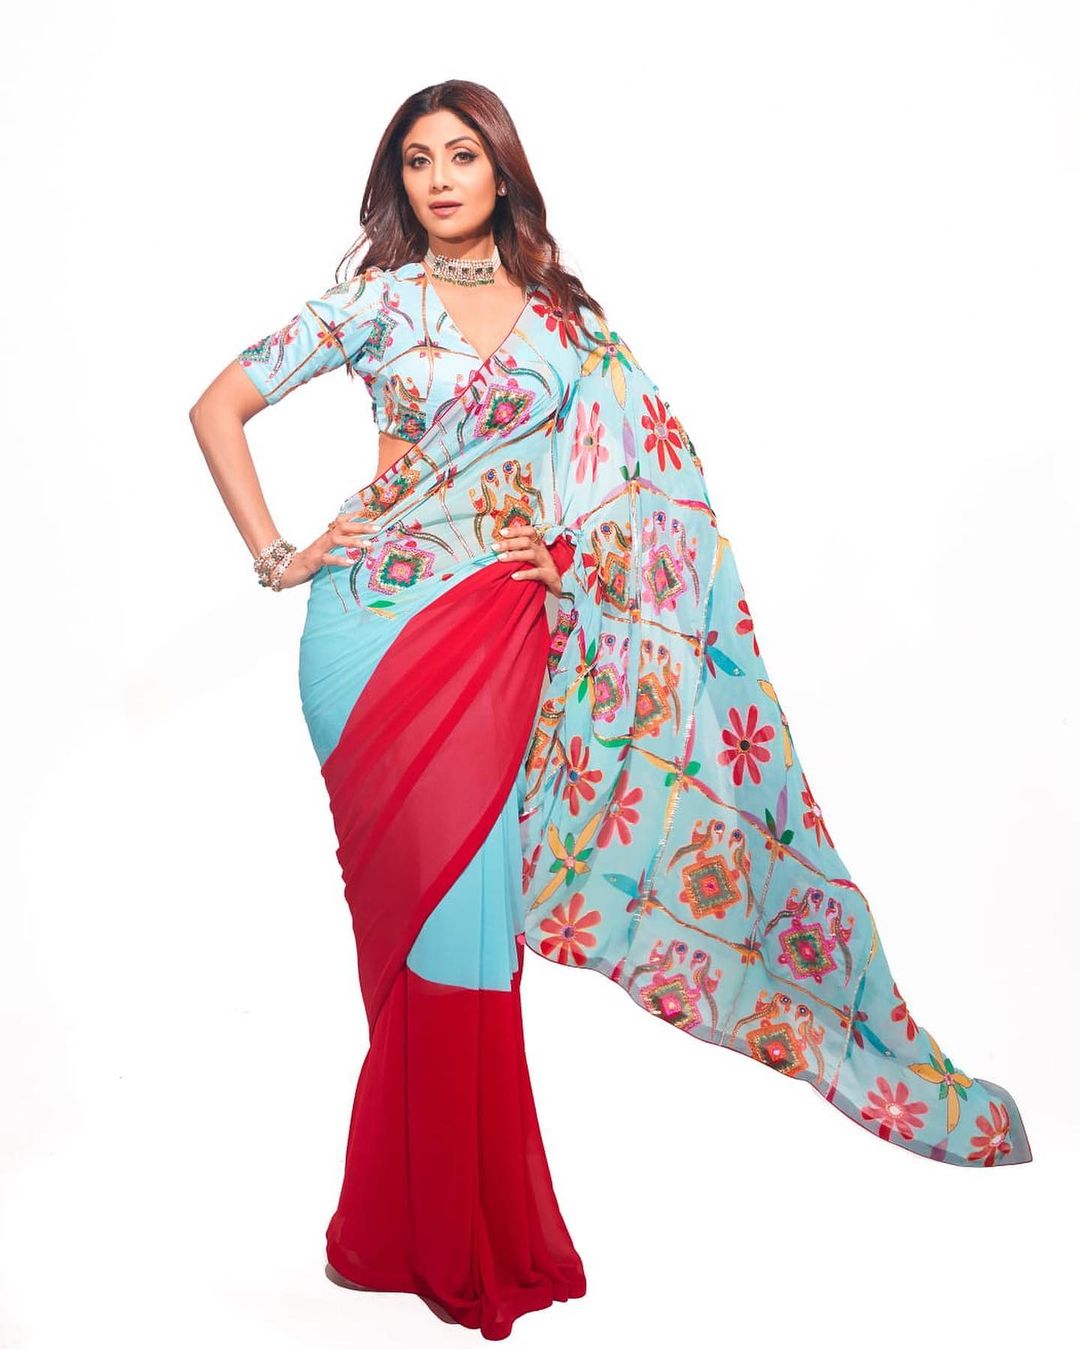 Shilpa Shetty in Monisha Jaising Saree for Super Dancer | Zeenat